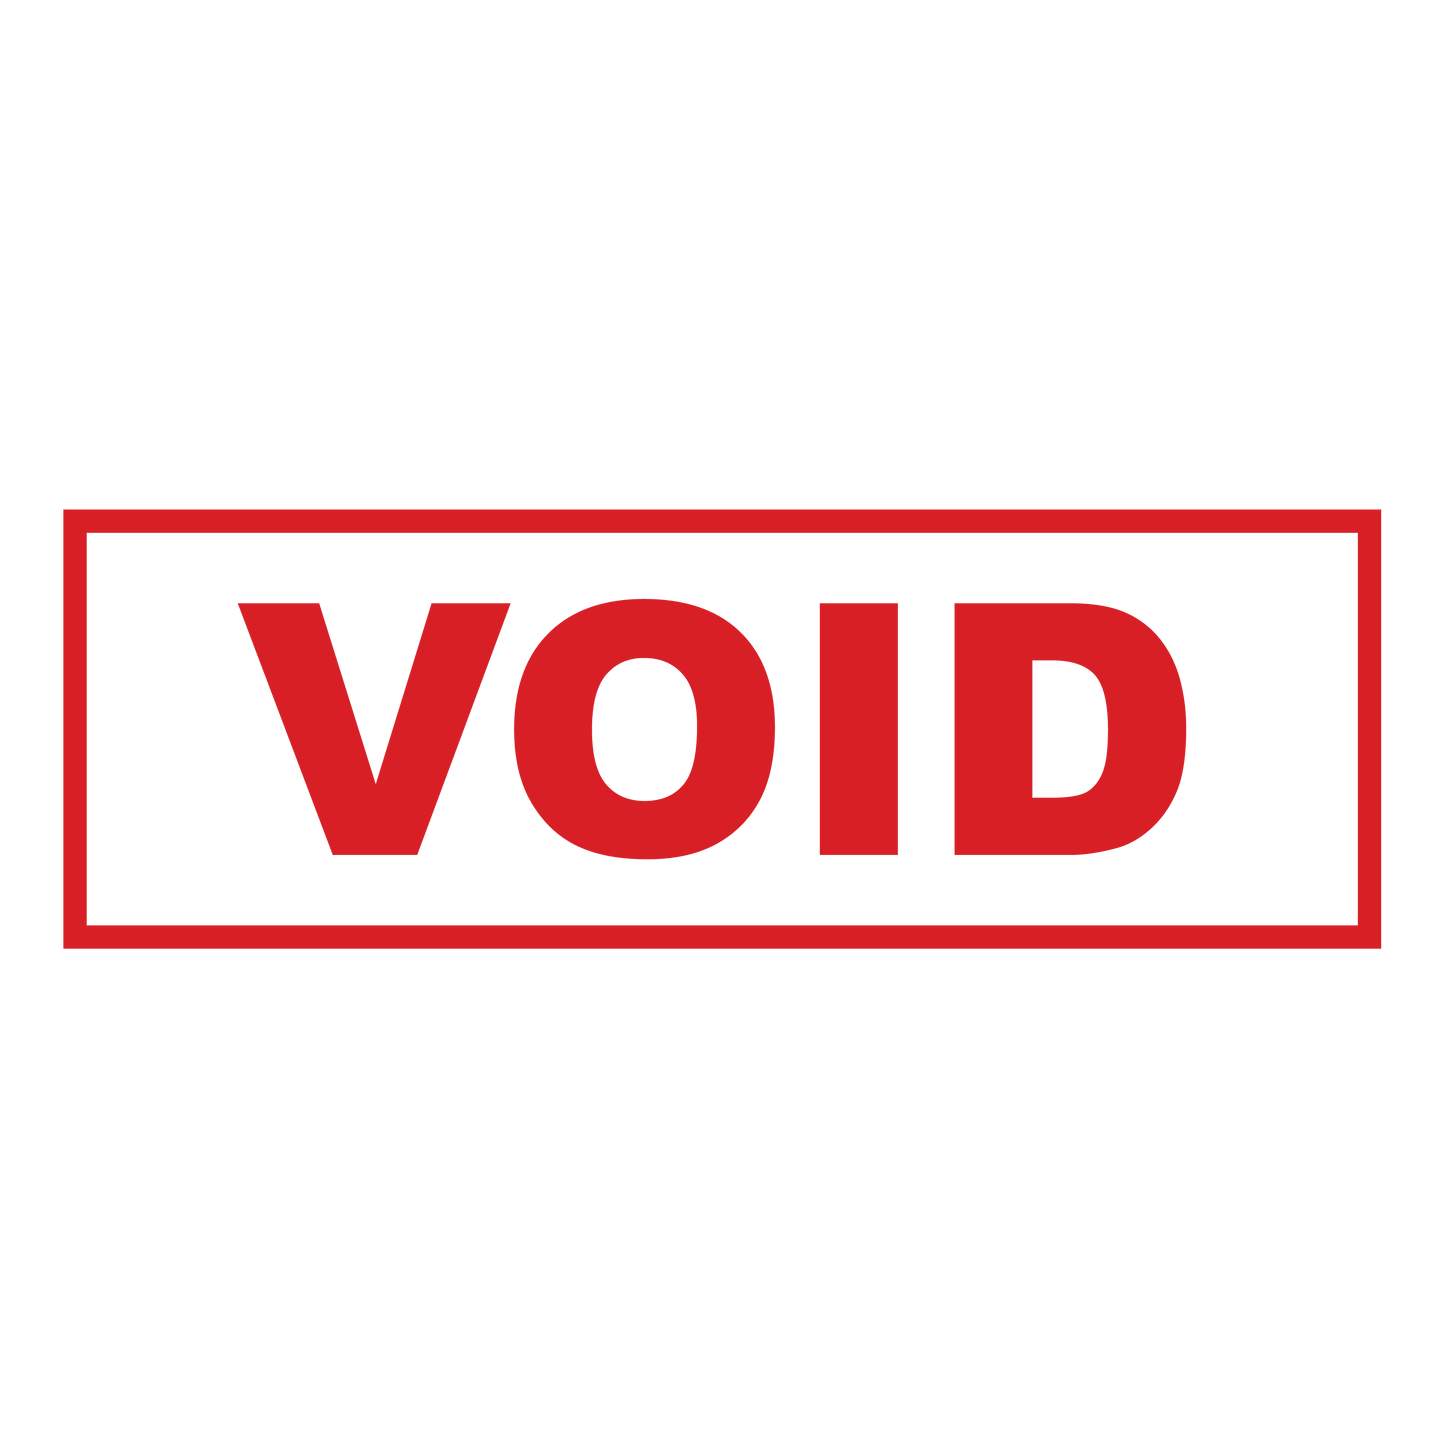 Box VOID Stamp